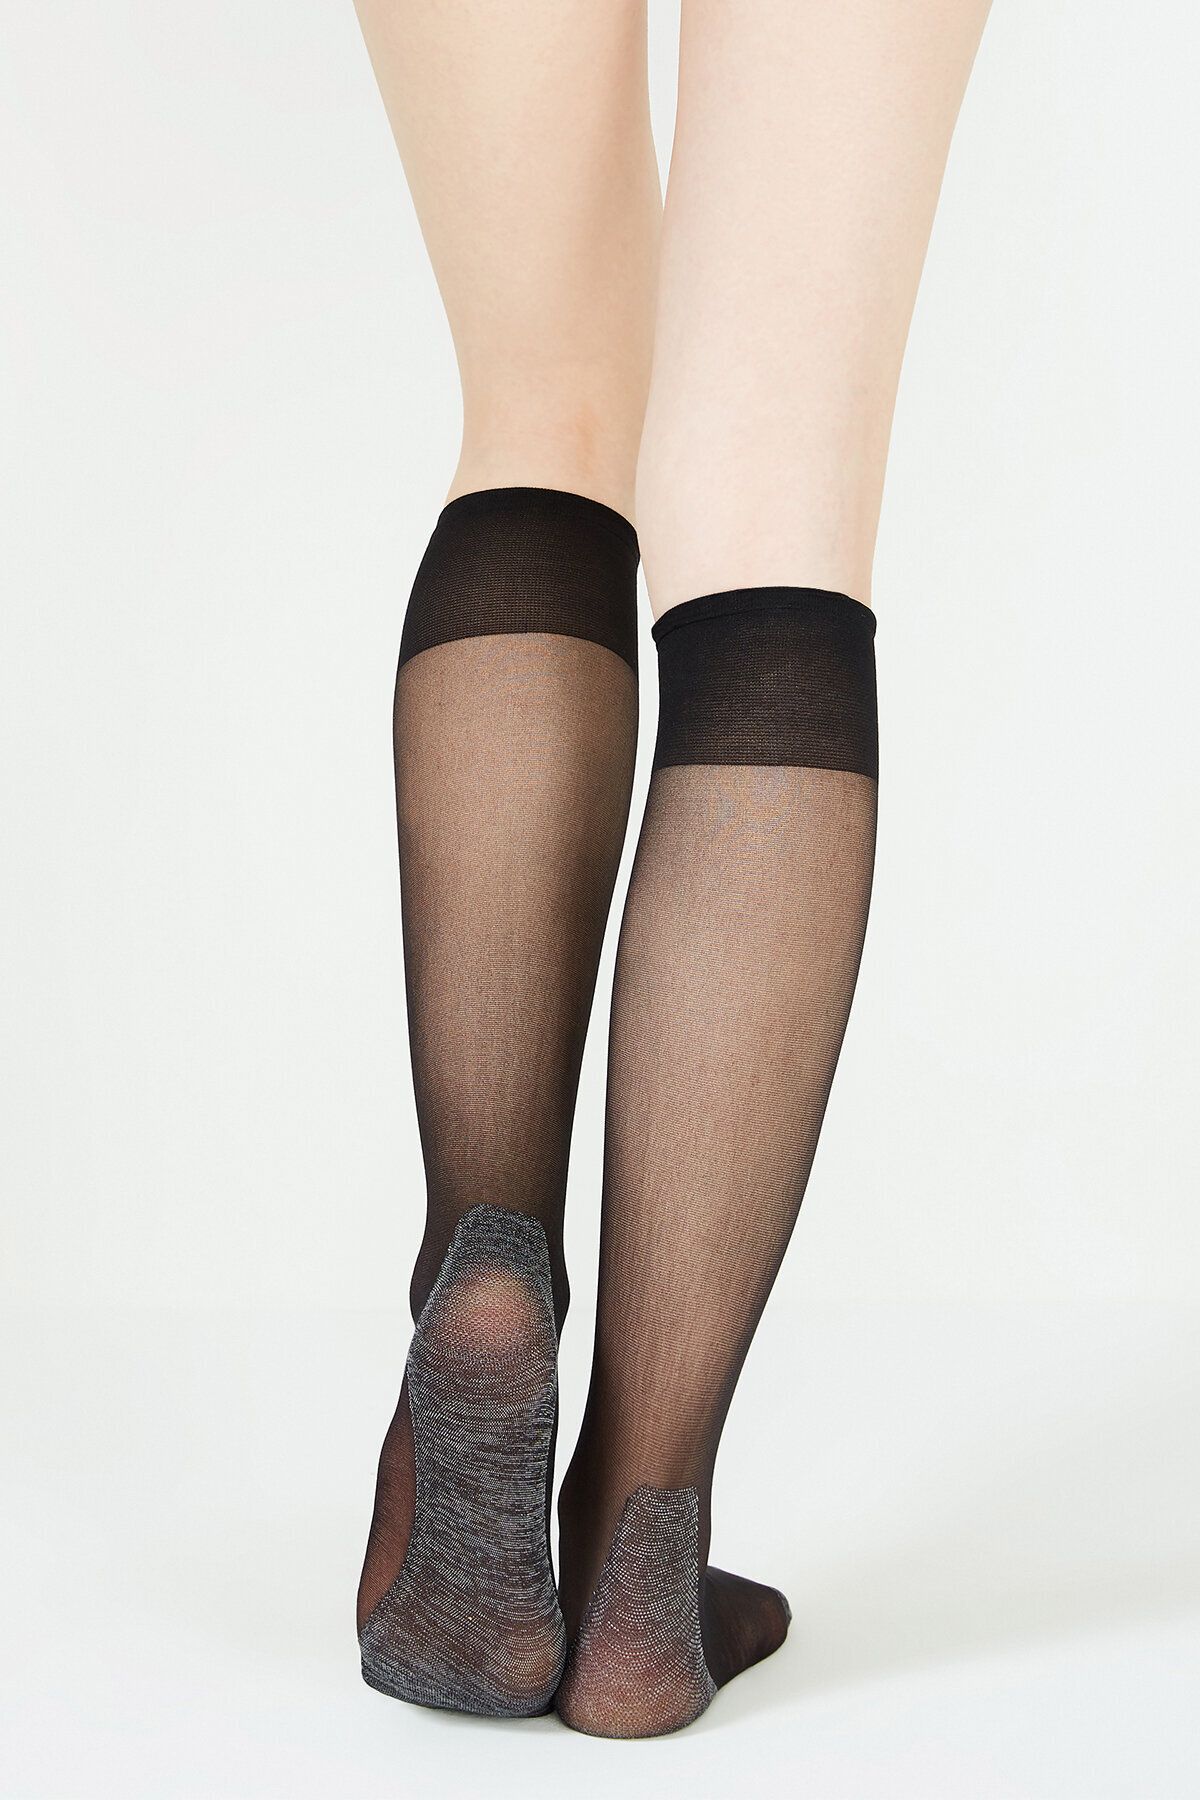 12 Pair Black Knee Hi Trouser Socks Stocking Stretchy Sheer Nylon Women  8.5-11 | eBay